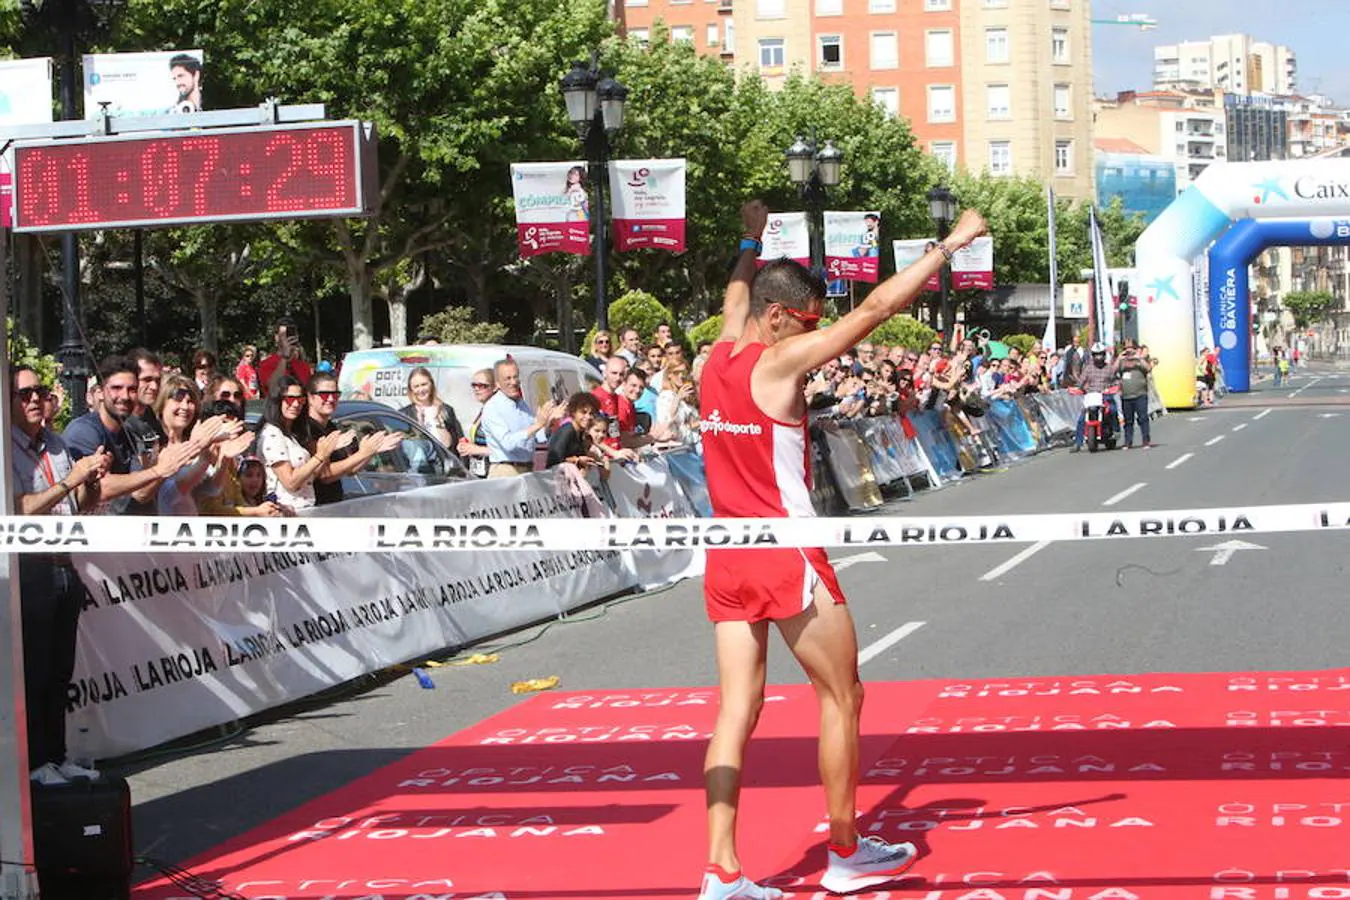 Camilo Santiago llega a meta como ganador de la edia Maratón 2018 y conquista un nuevo título. 